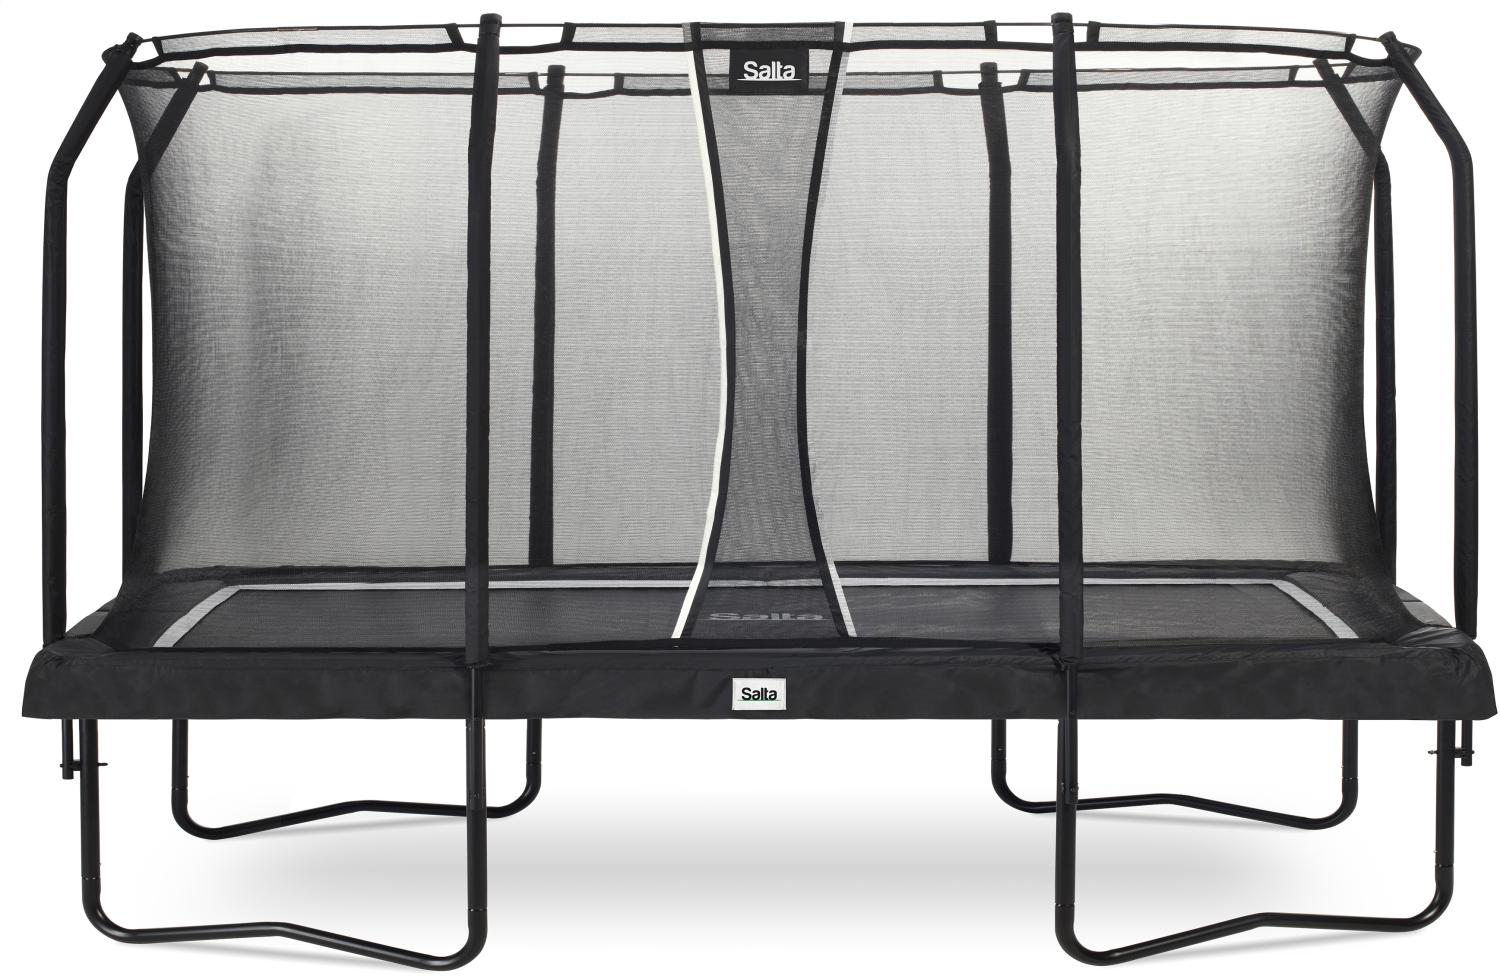 Salta 'Premium Black Edition' Trampolin rechteckig, 244 x 396 cm, ab 5 Jahren, maximal belastbar bis 150 kg, inkl. Sicherheitsnetz Bild 1